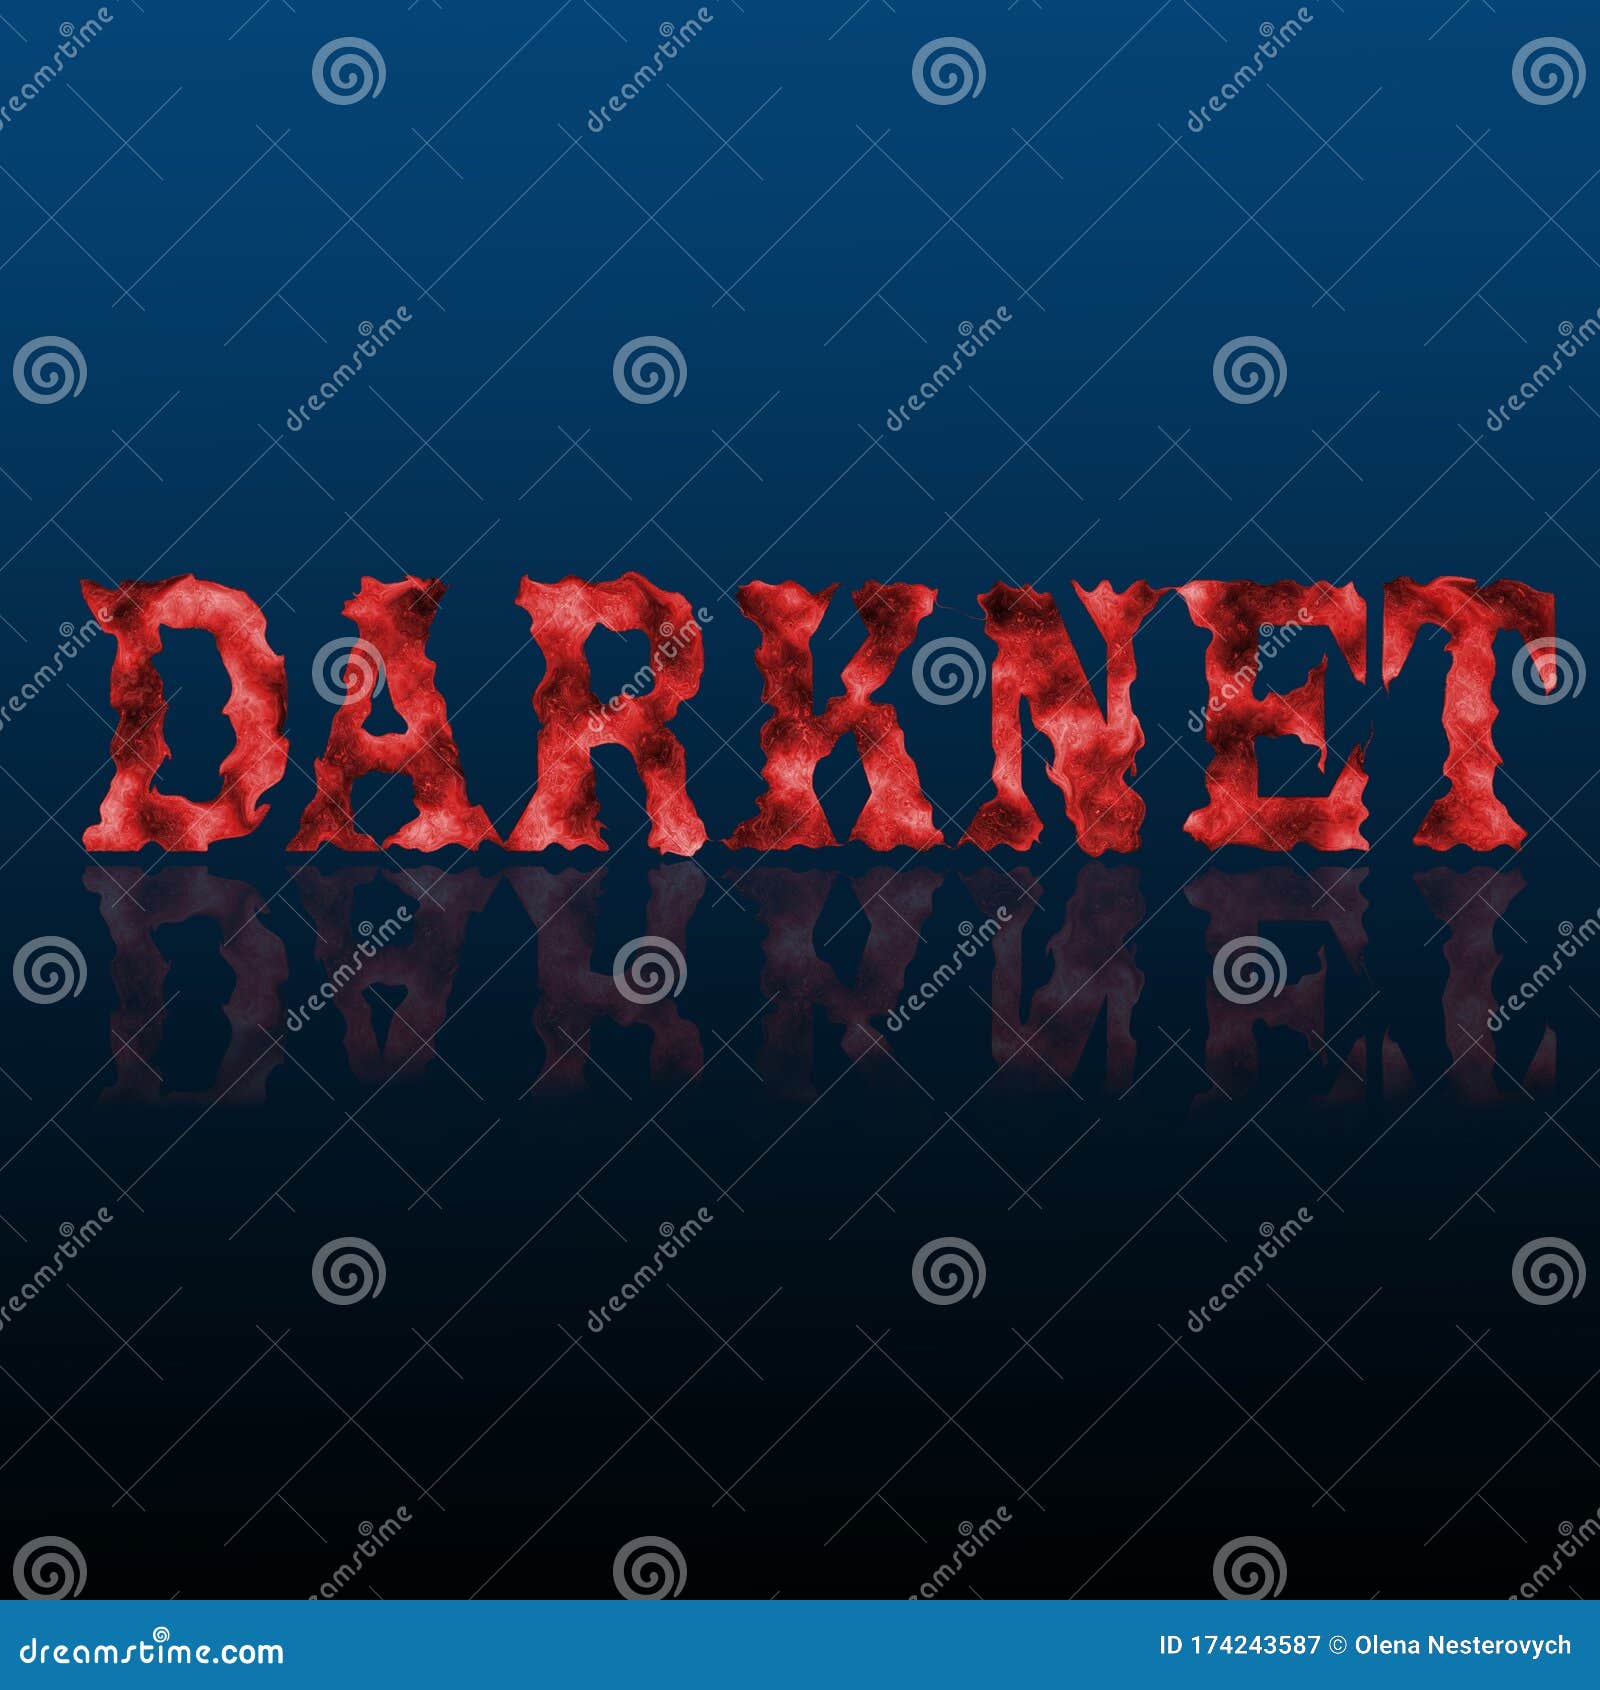 Darknet words русификатор для браузера тор